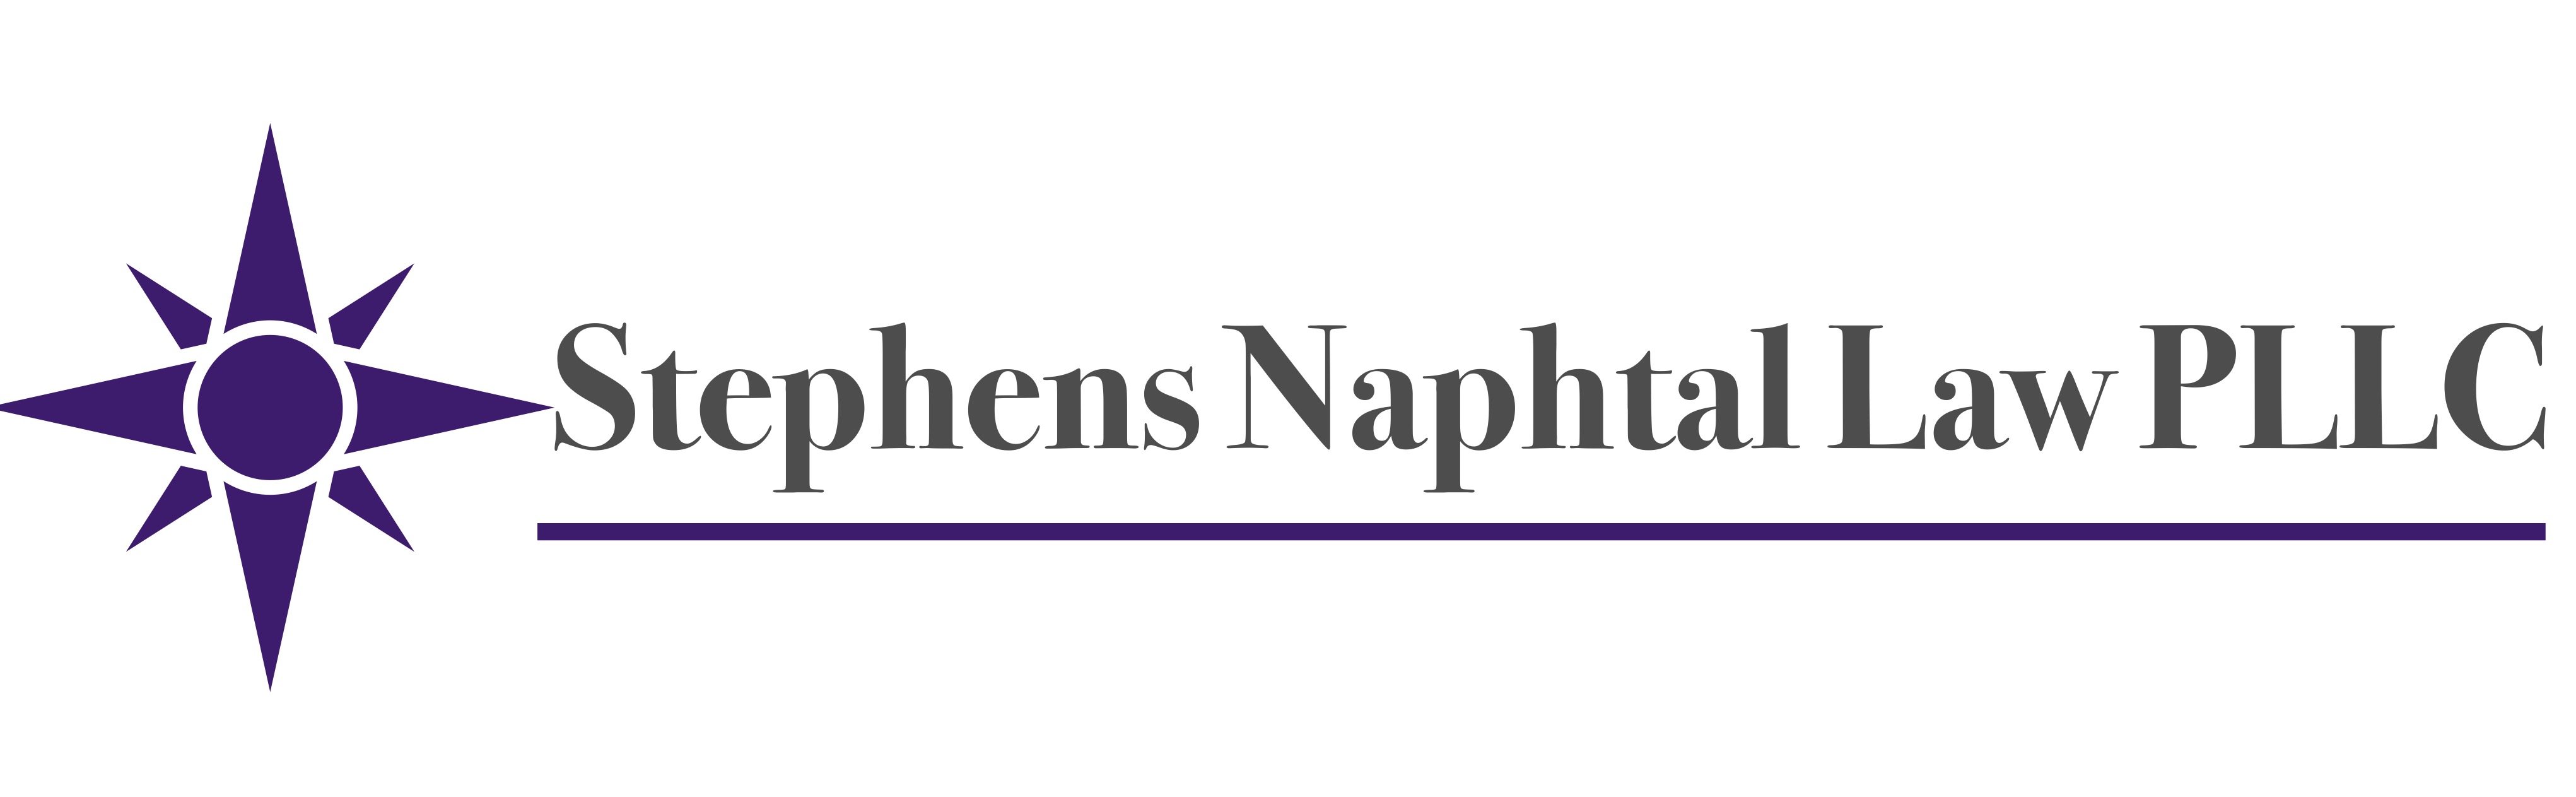 Stephens Naphtal Law PLLC